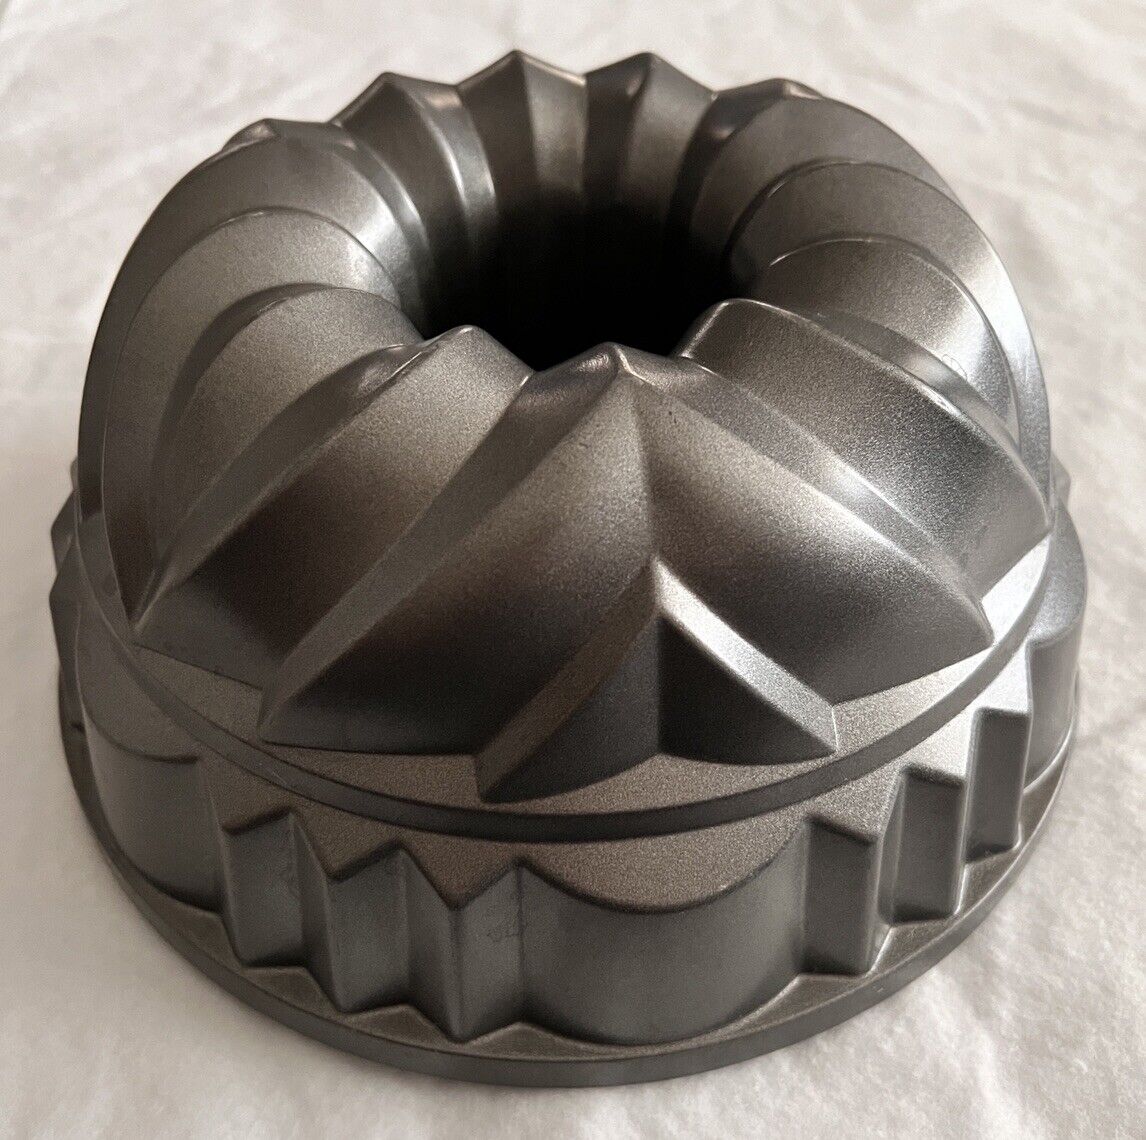 Kaiser Sapphire Bundt Cake Pan Nonstick Cast Aluminum 10 Cup